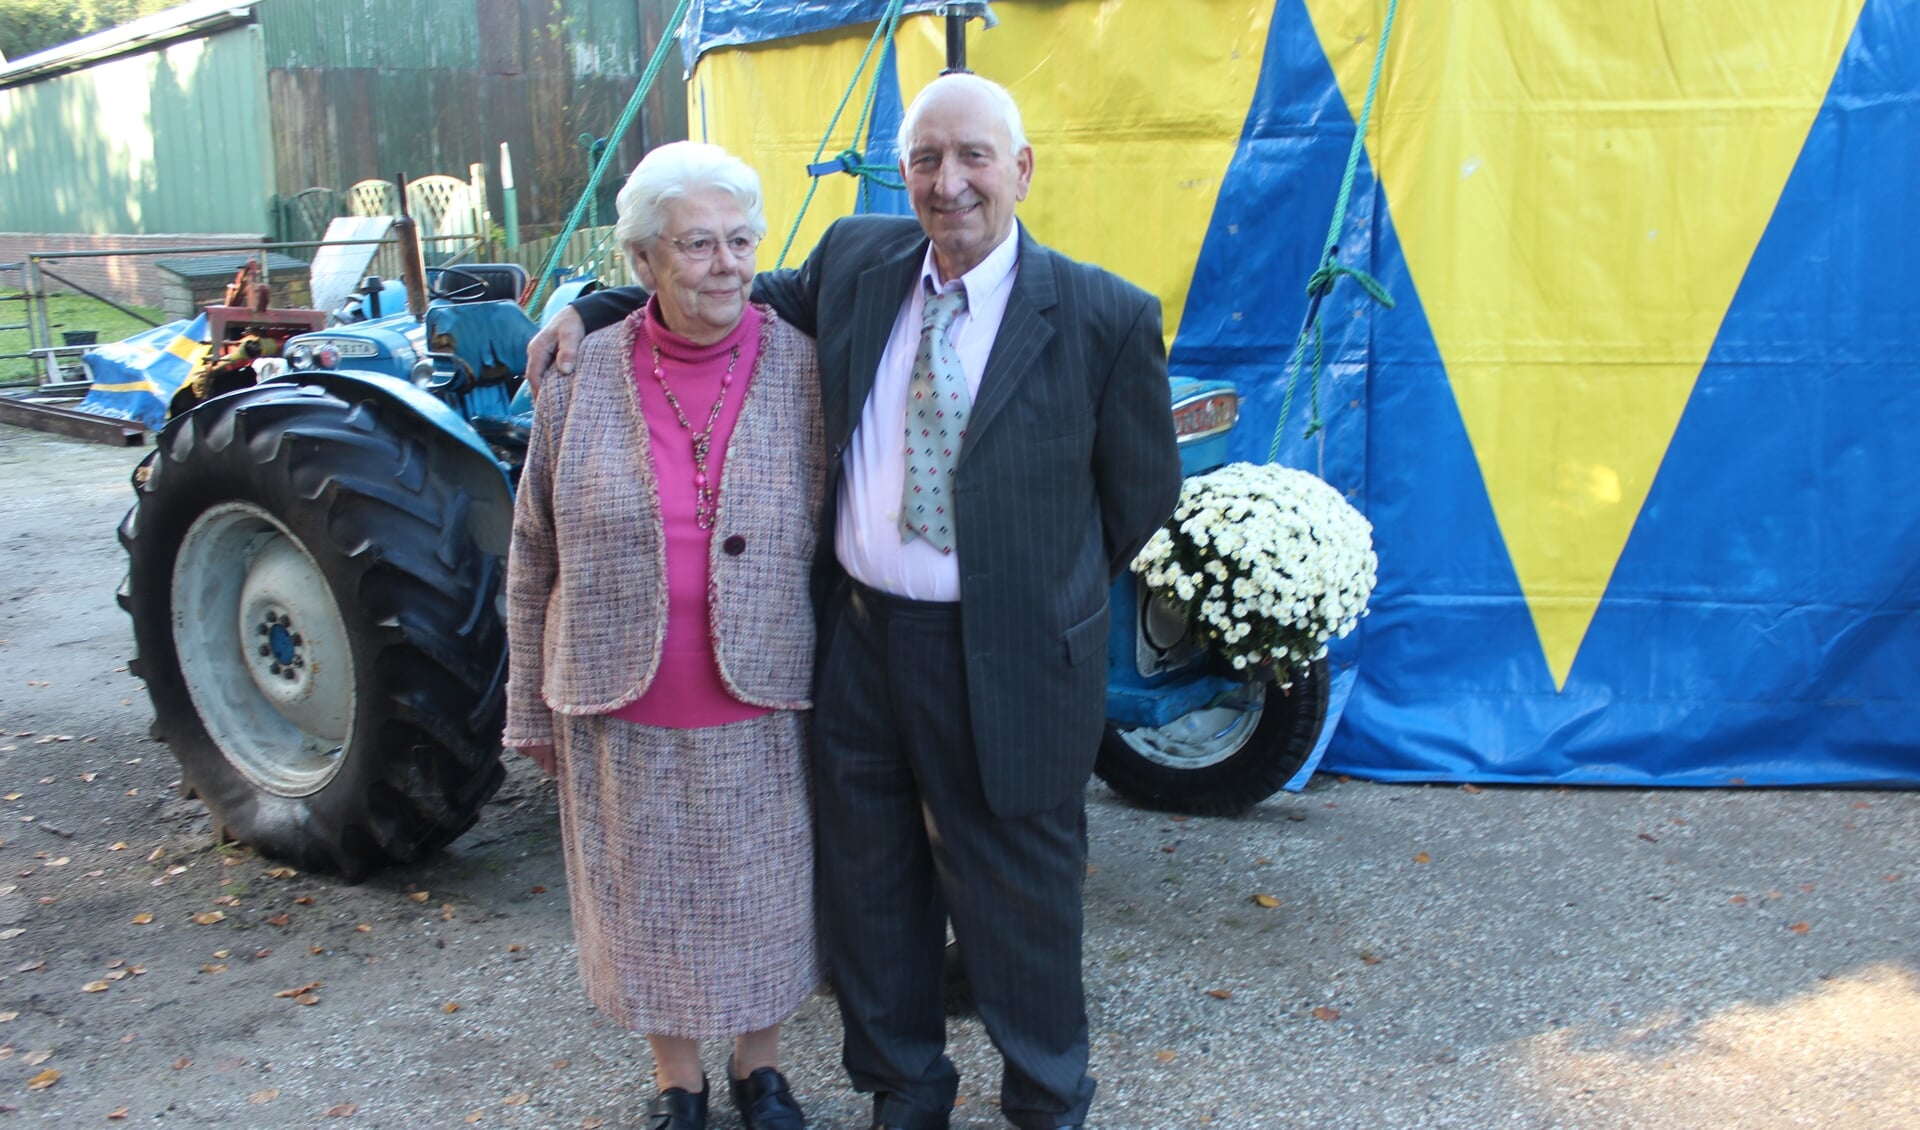 Jopie Barlo en Wouter Stormbroek waren 23 september 60 jaar getrouwd.